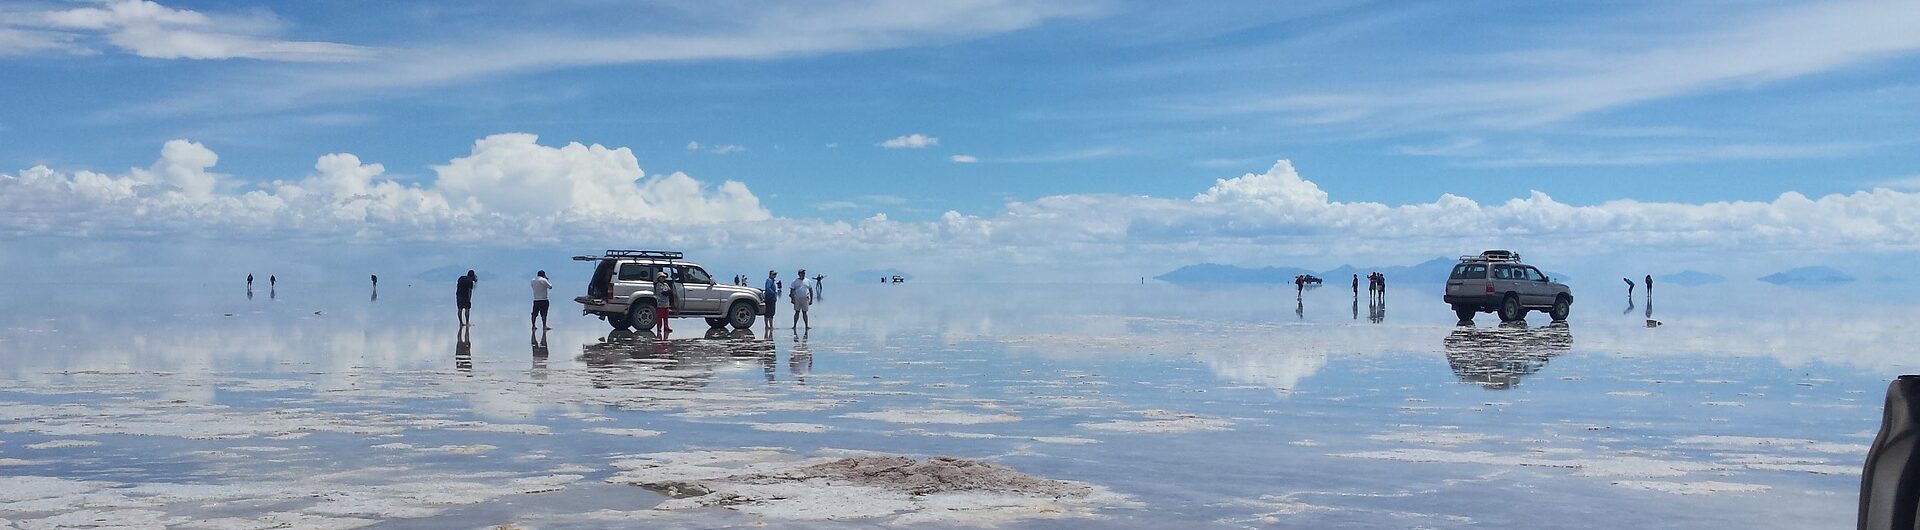 Boliwia, lake